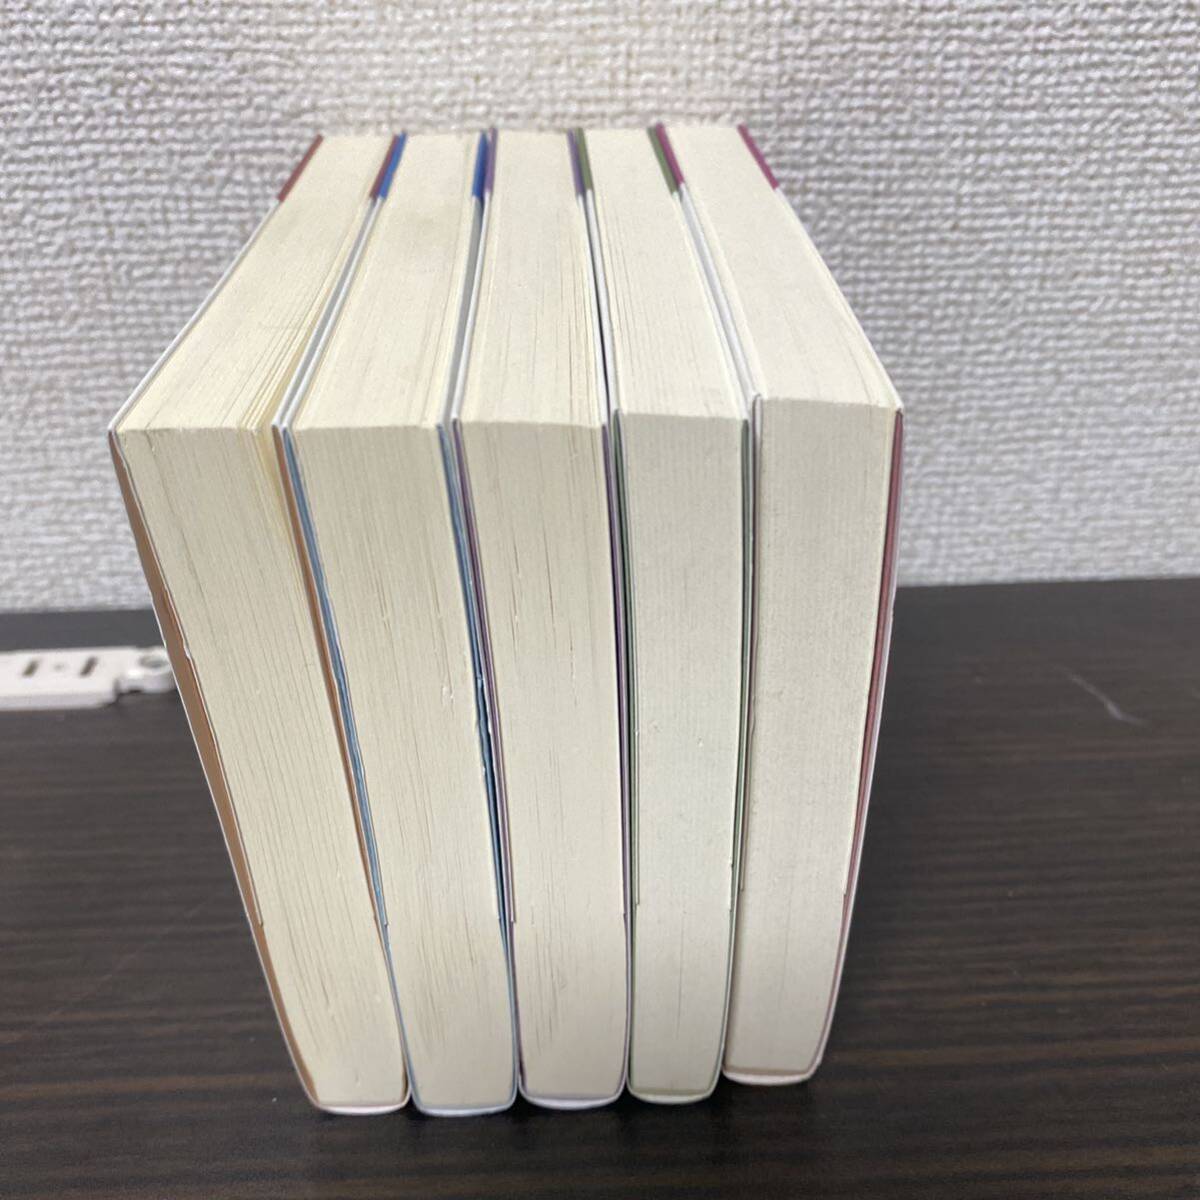 経済で読み解く日本史 文庫版 ５冊セット